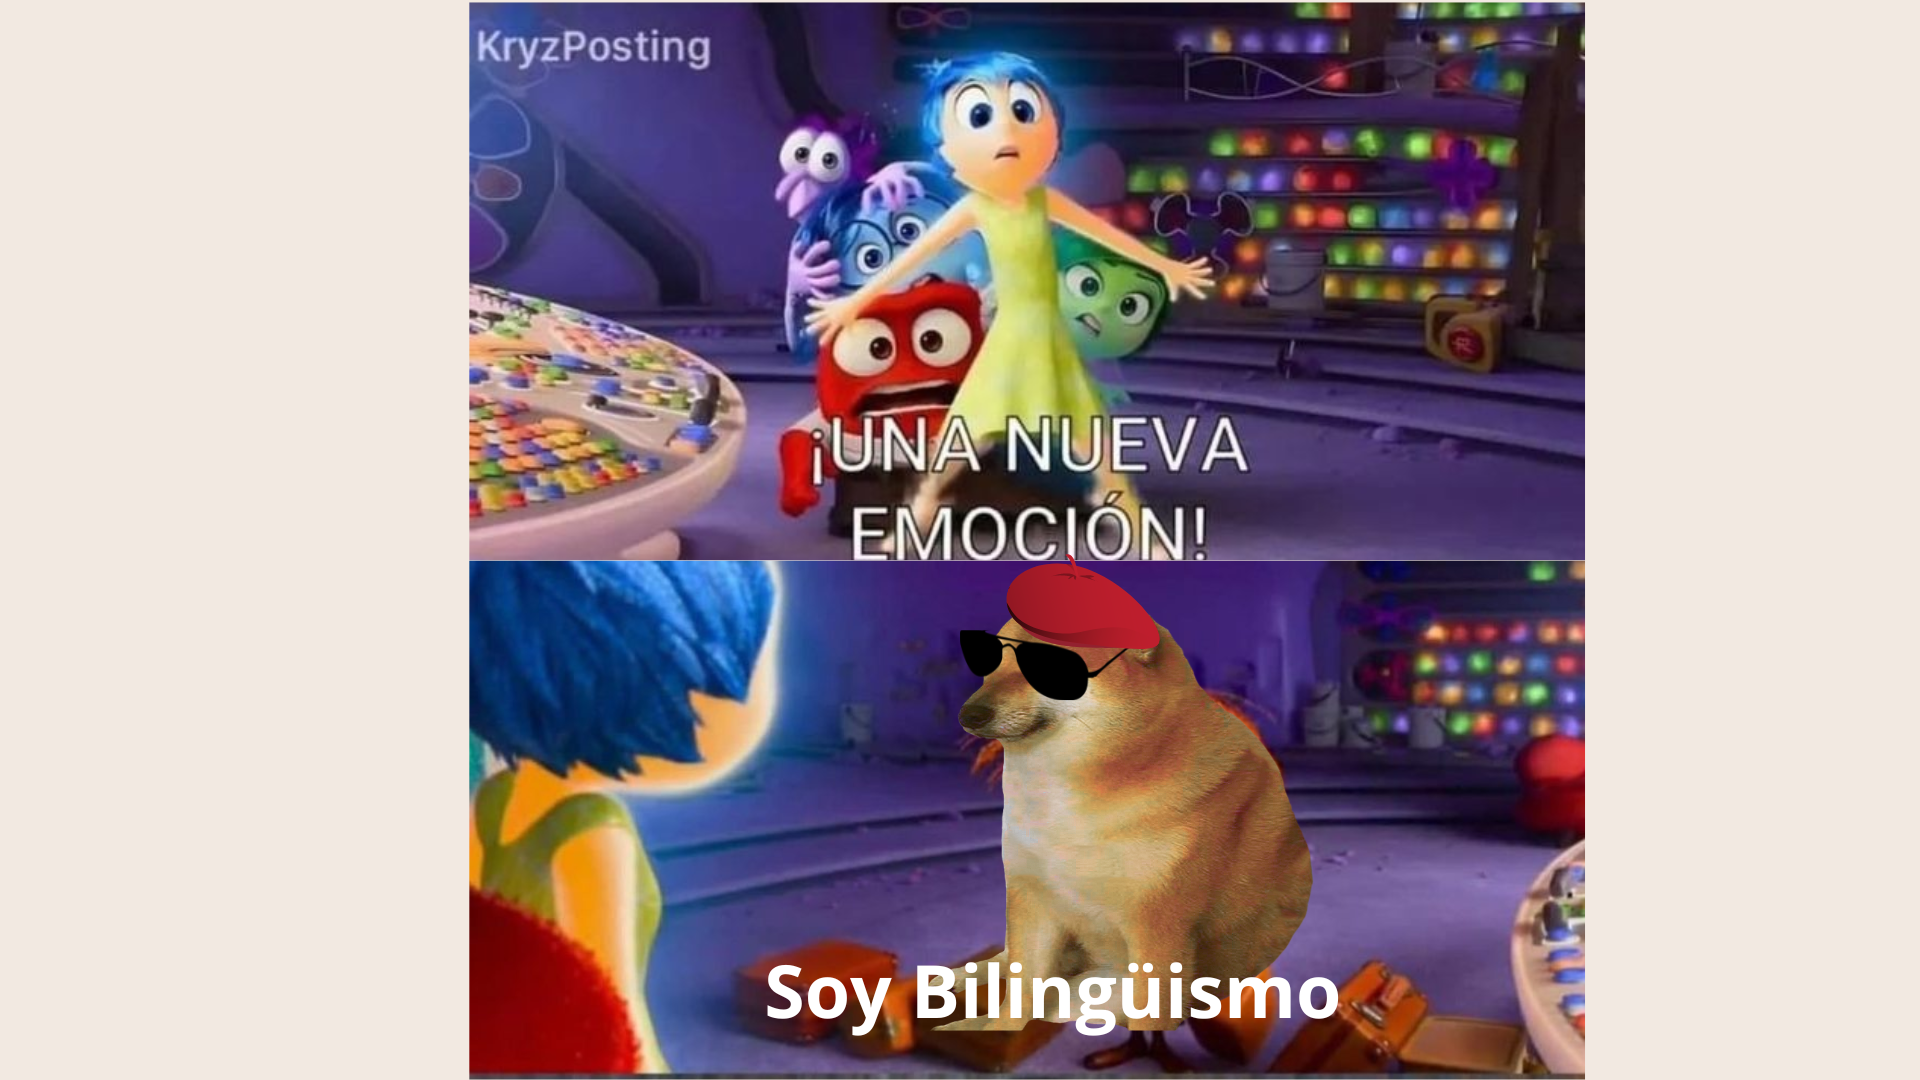 El bilingüismo es como una emoción